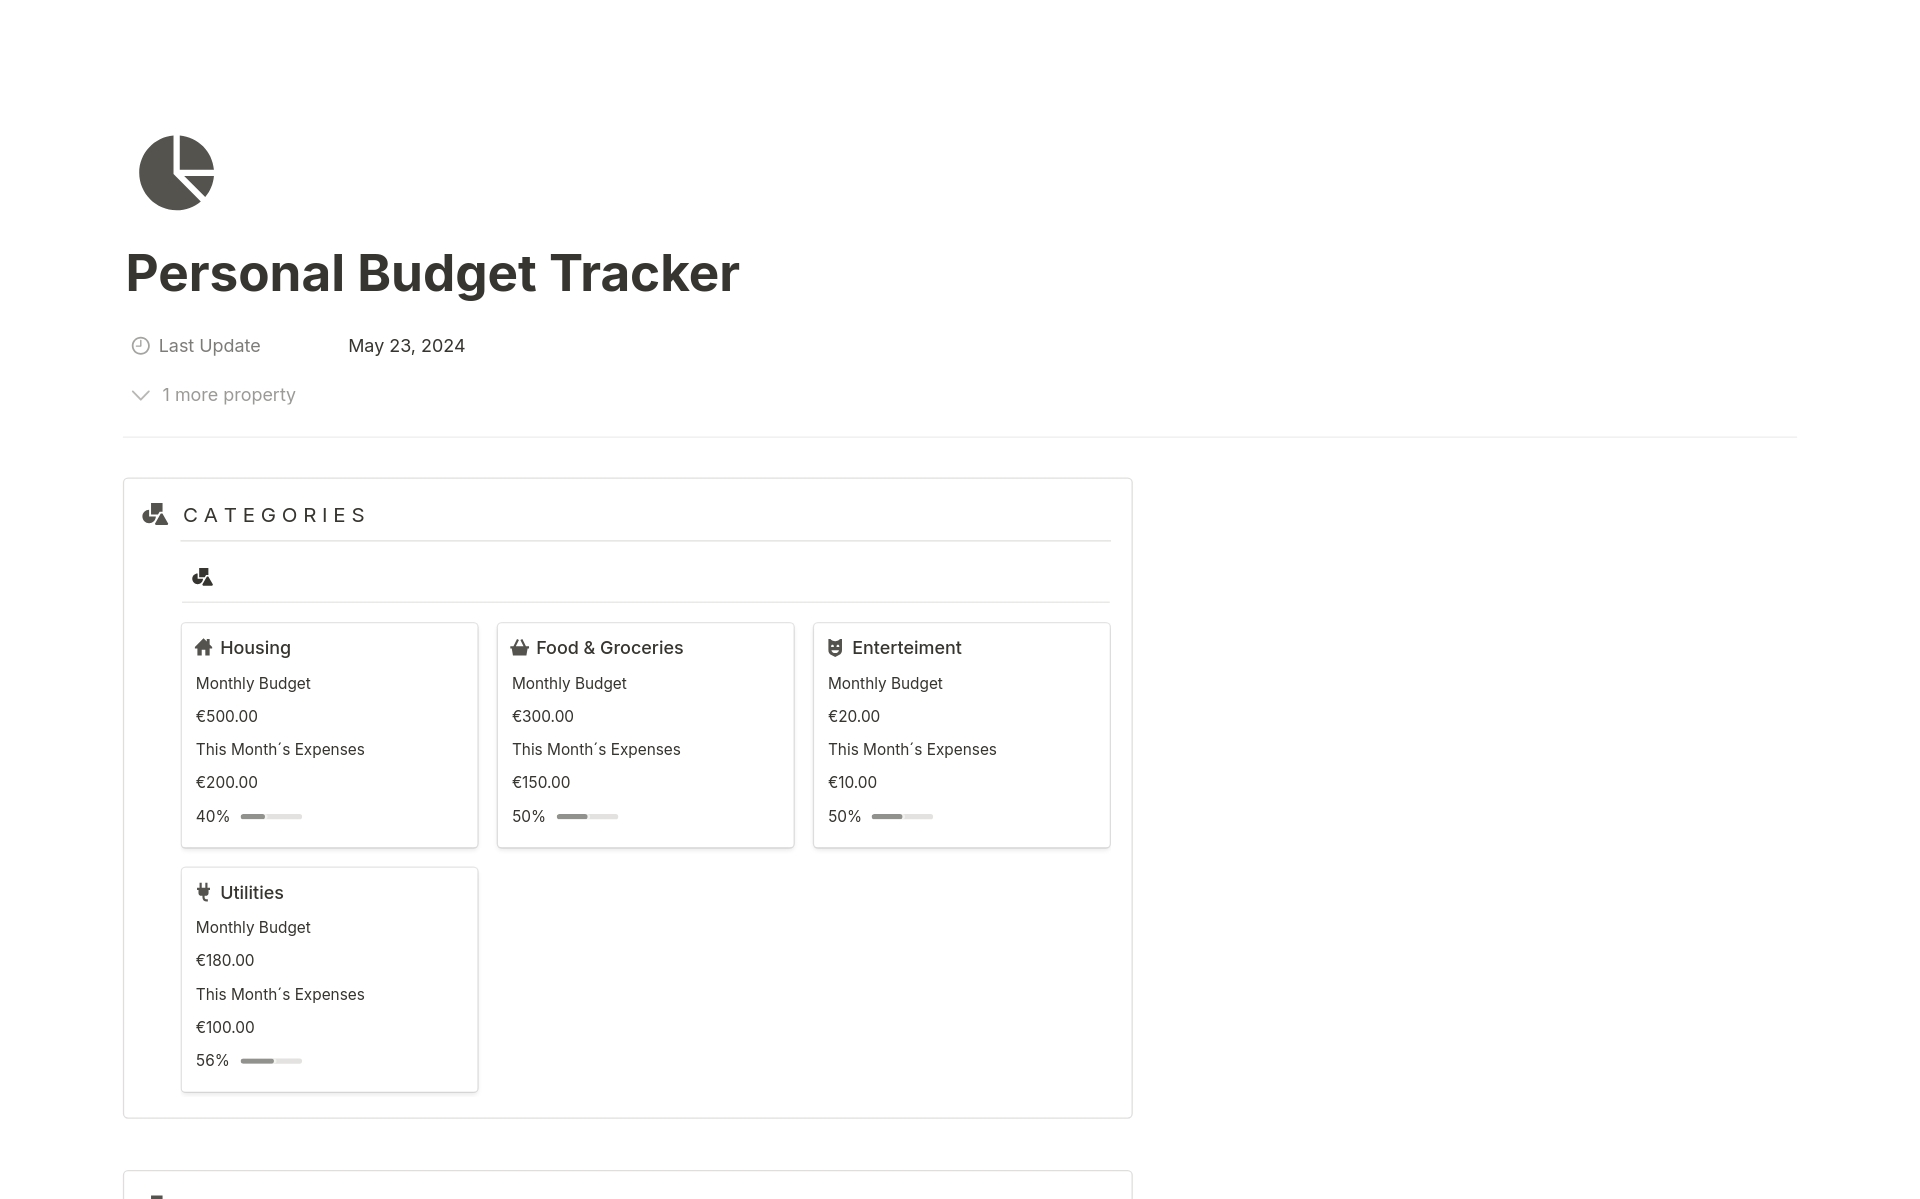 Vista previa de una plantilla para Personal Budget Tracker